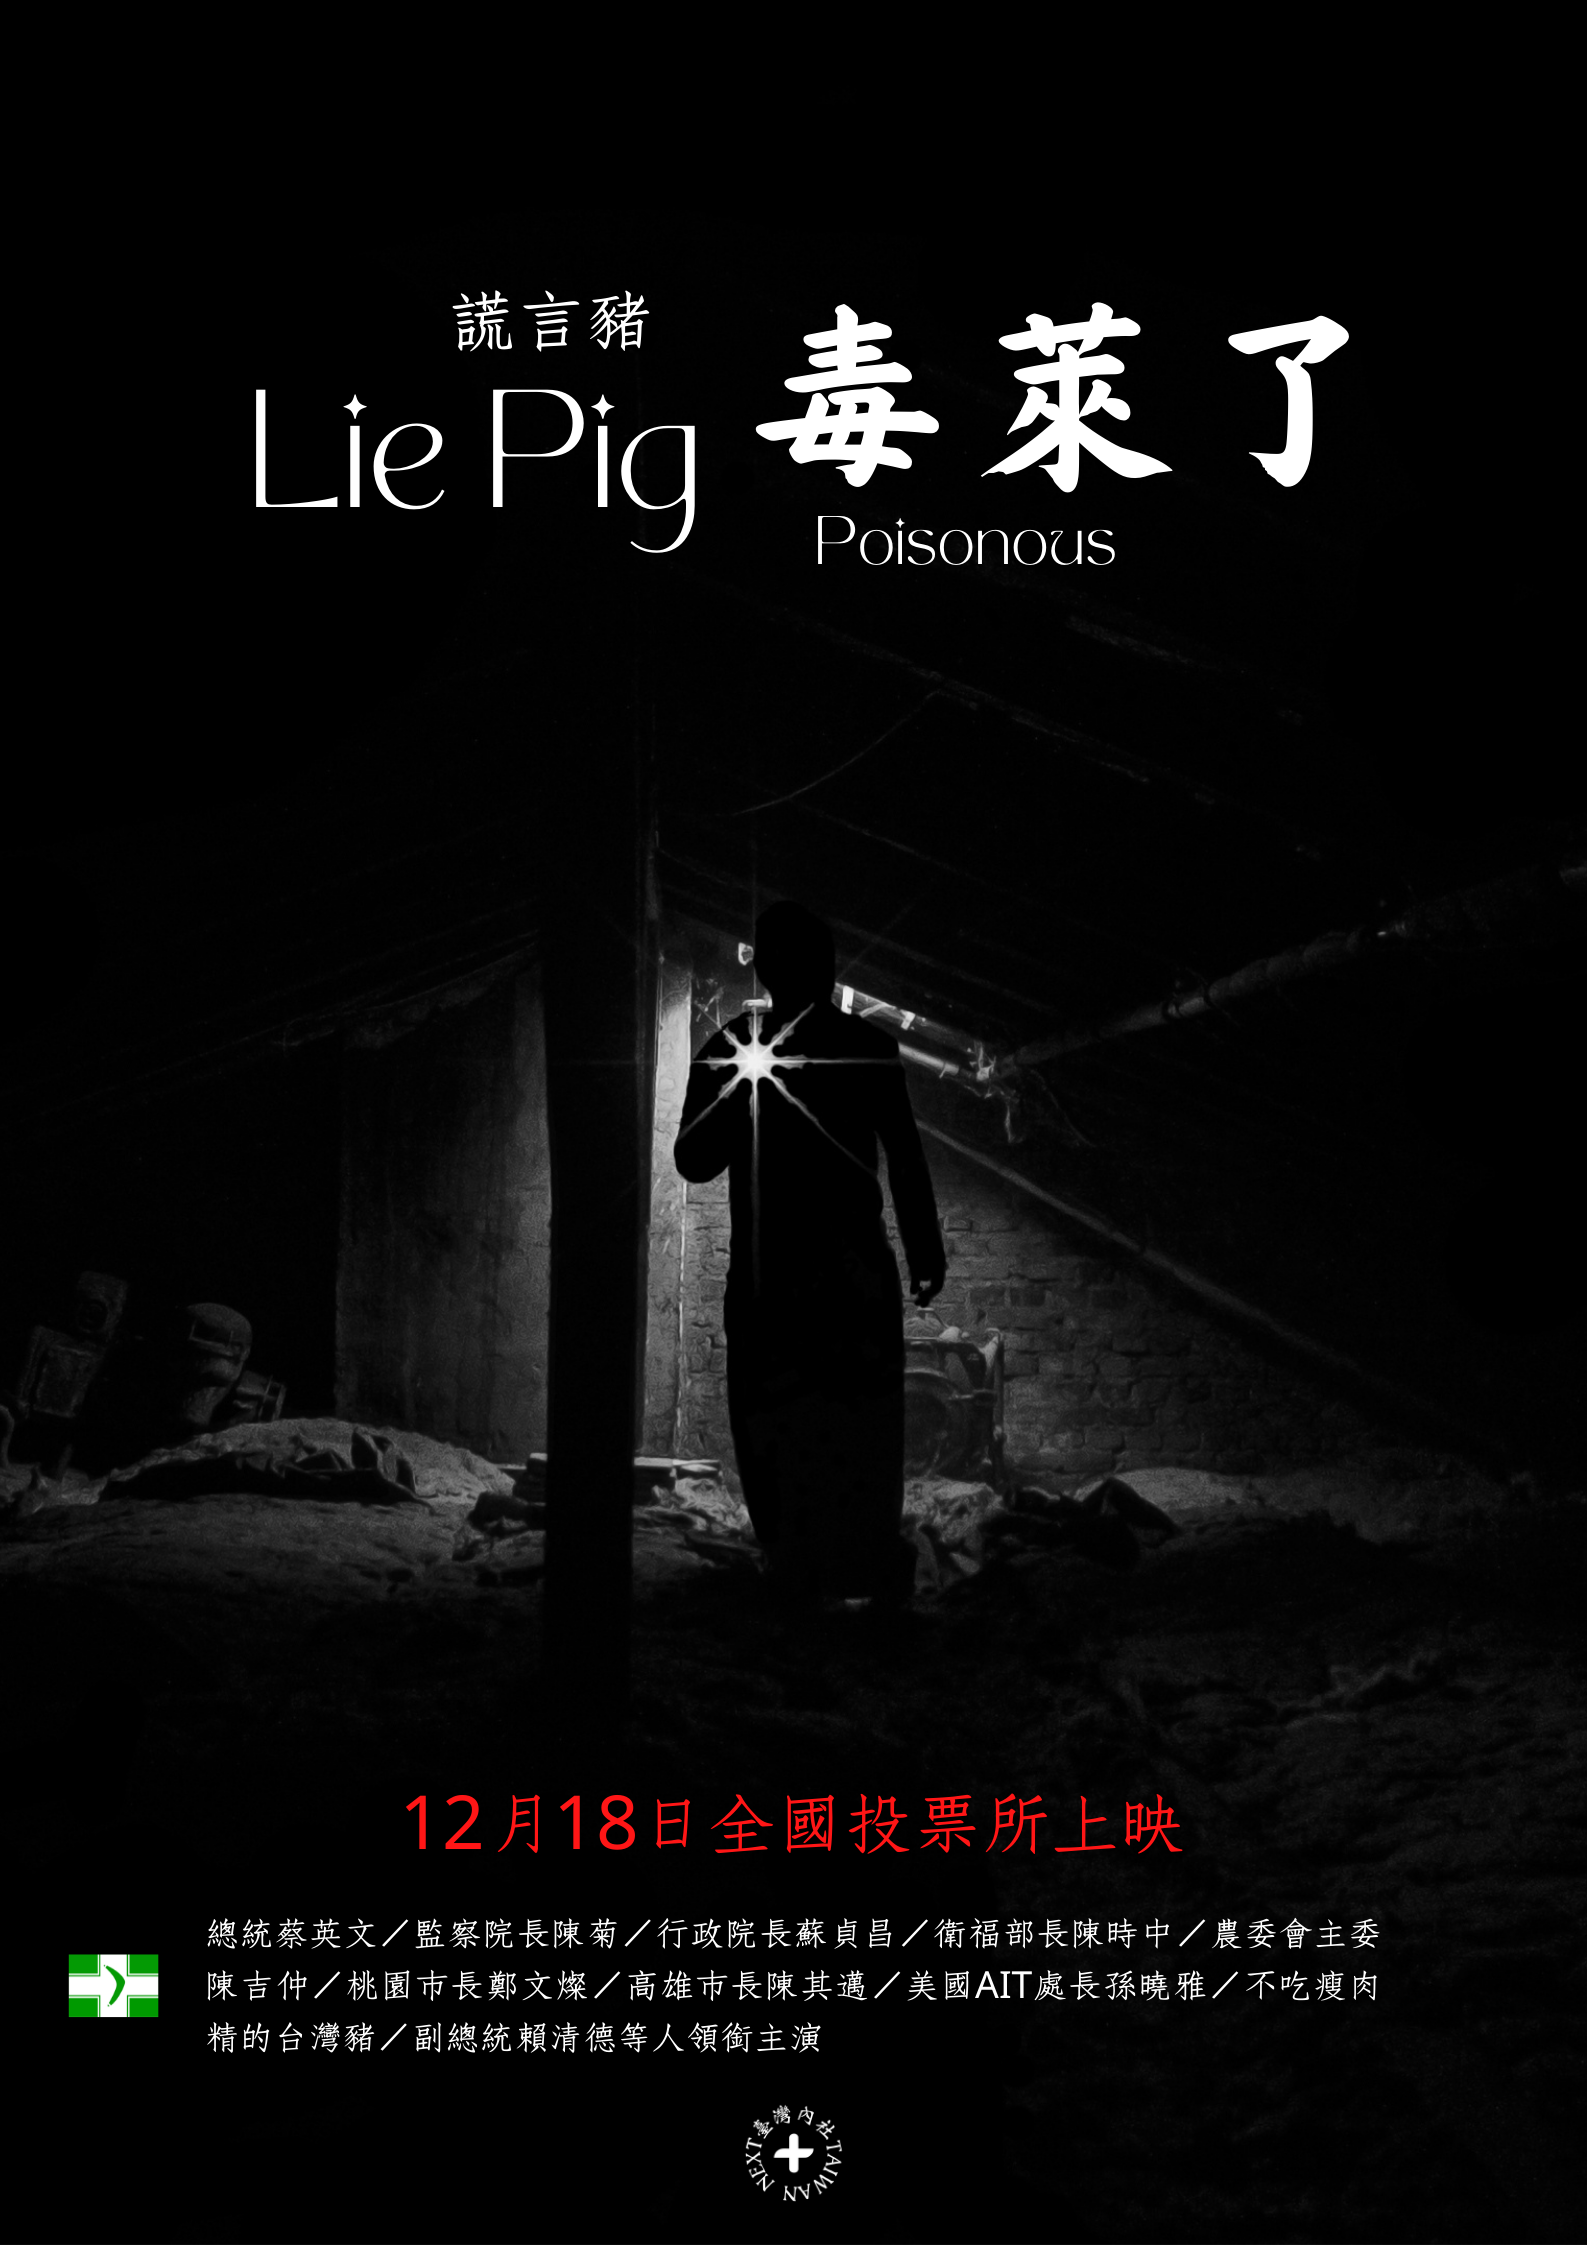 公投宣傳海報: Lie Pig 毒萊了 / 萊豬 美豬 謊言豬